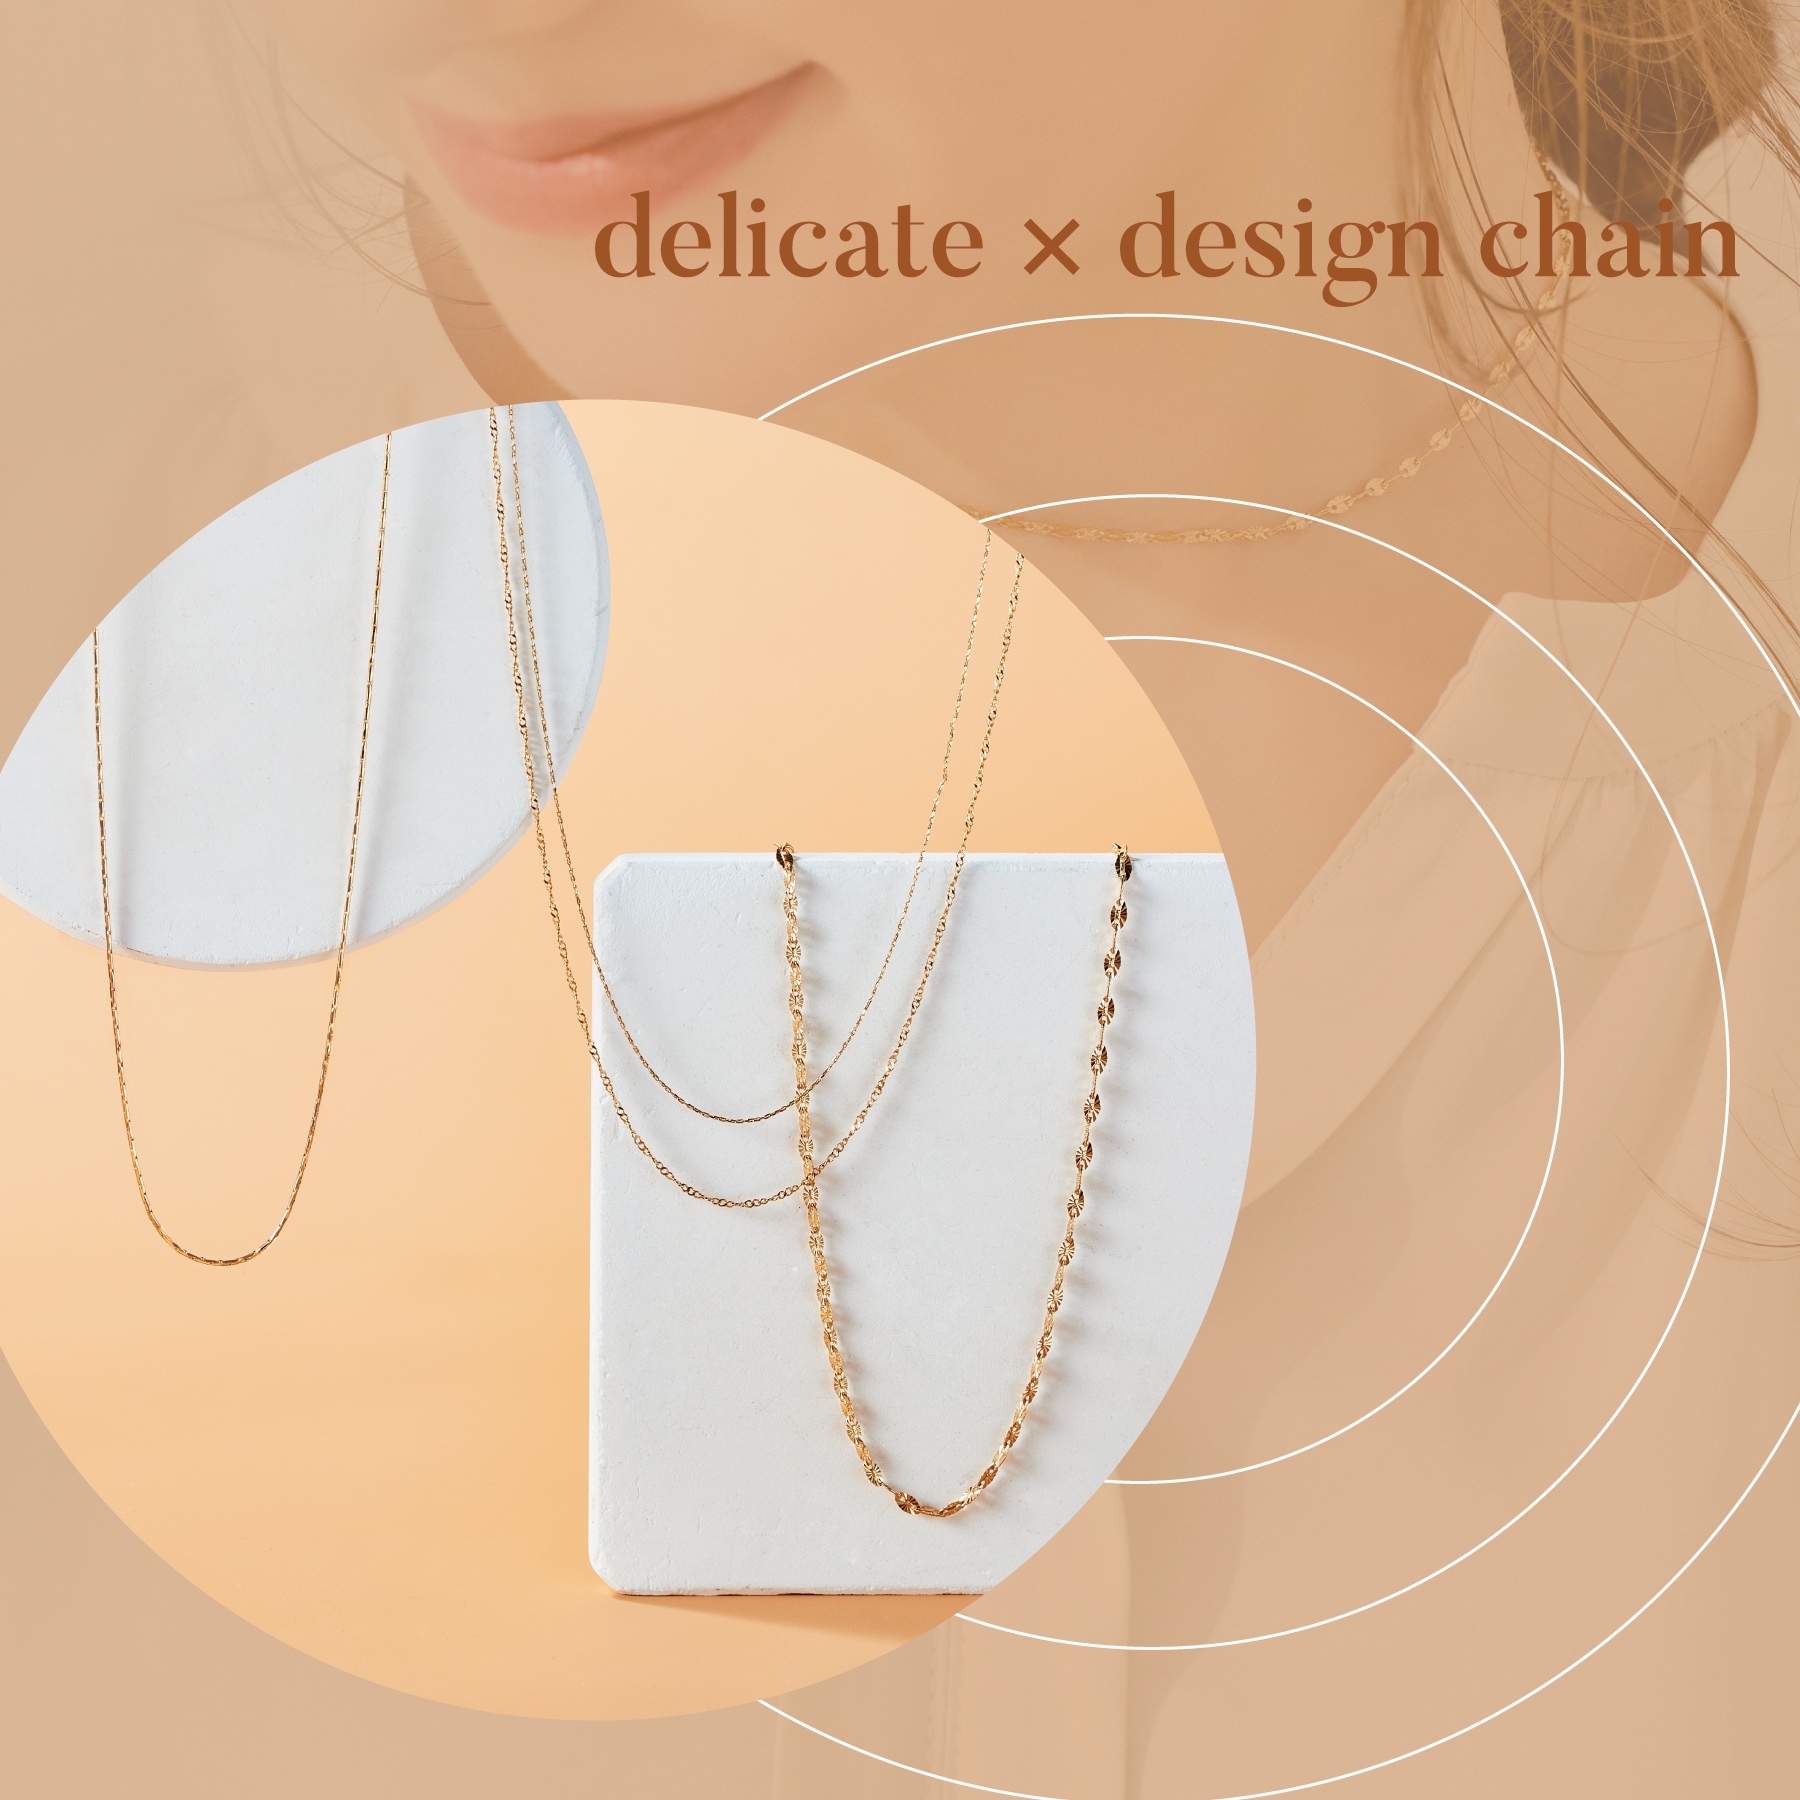 delicate  design chain